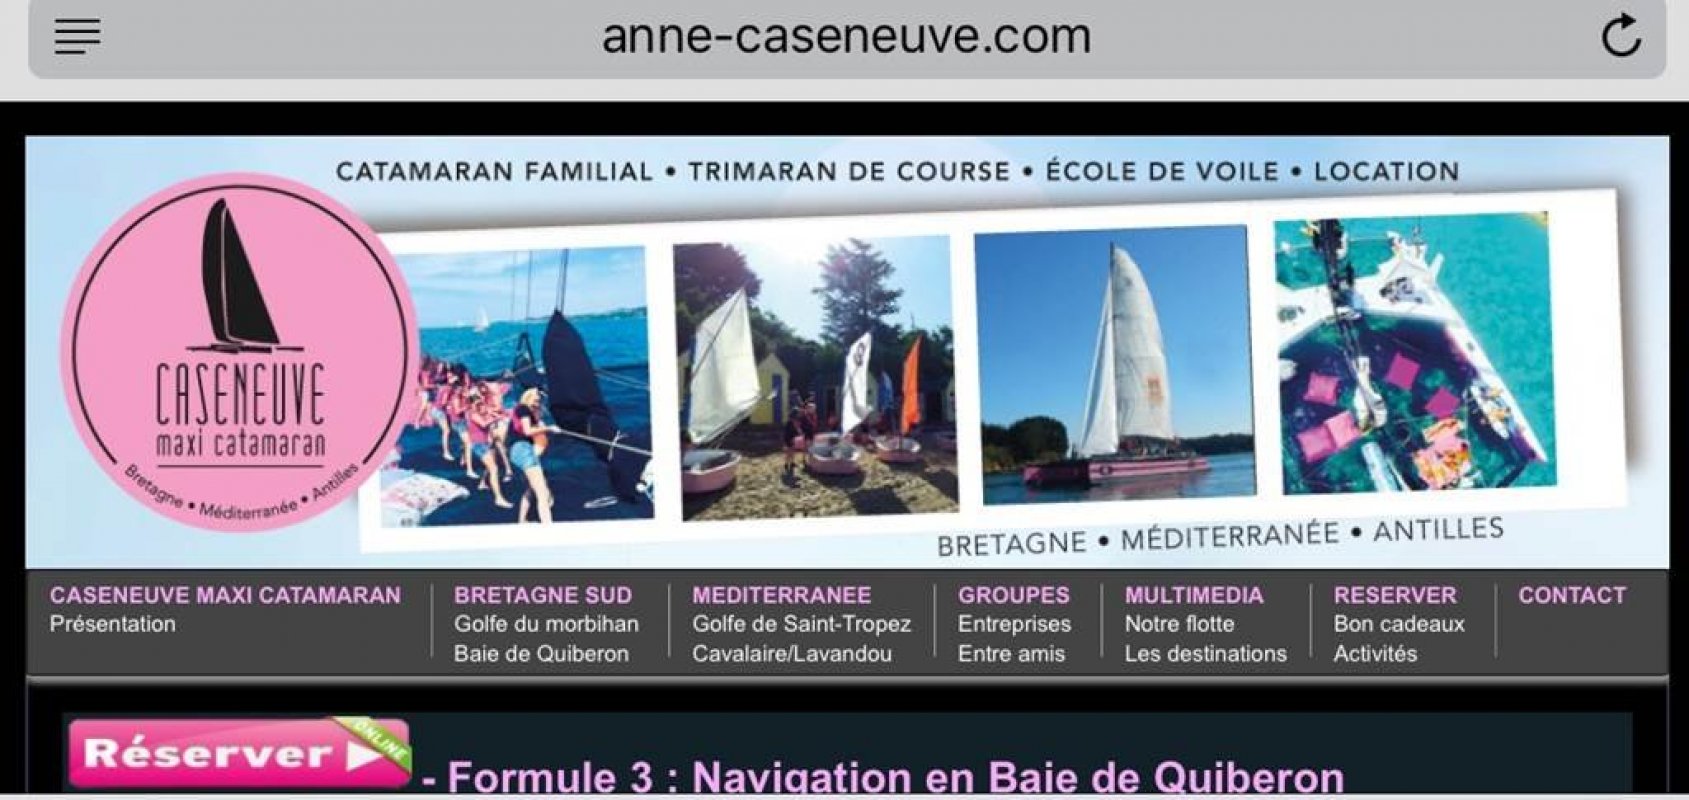 Balade Yoga Coucher De Soleil En Catamaran Anne Caseneuve